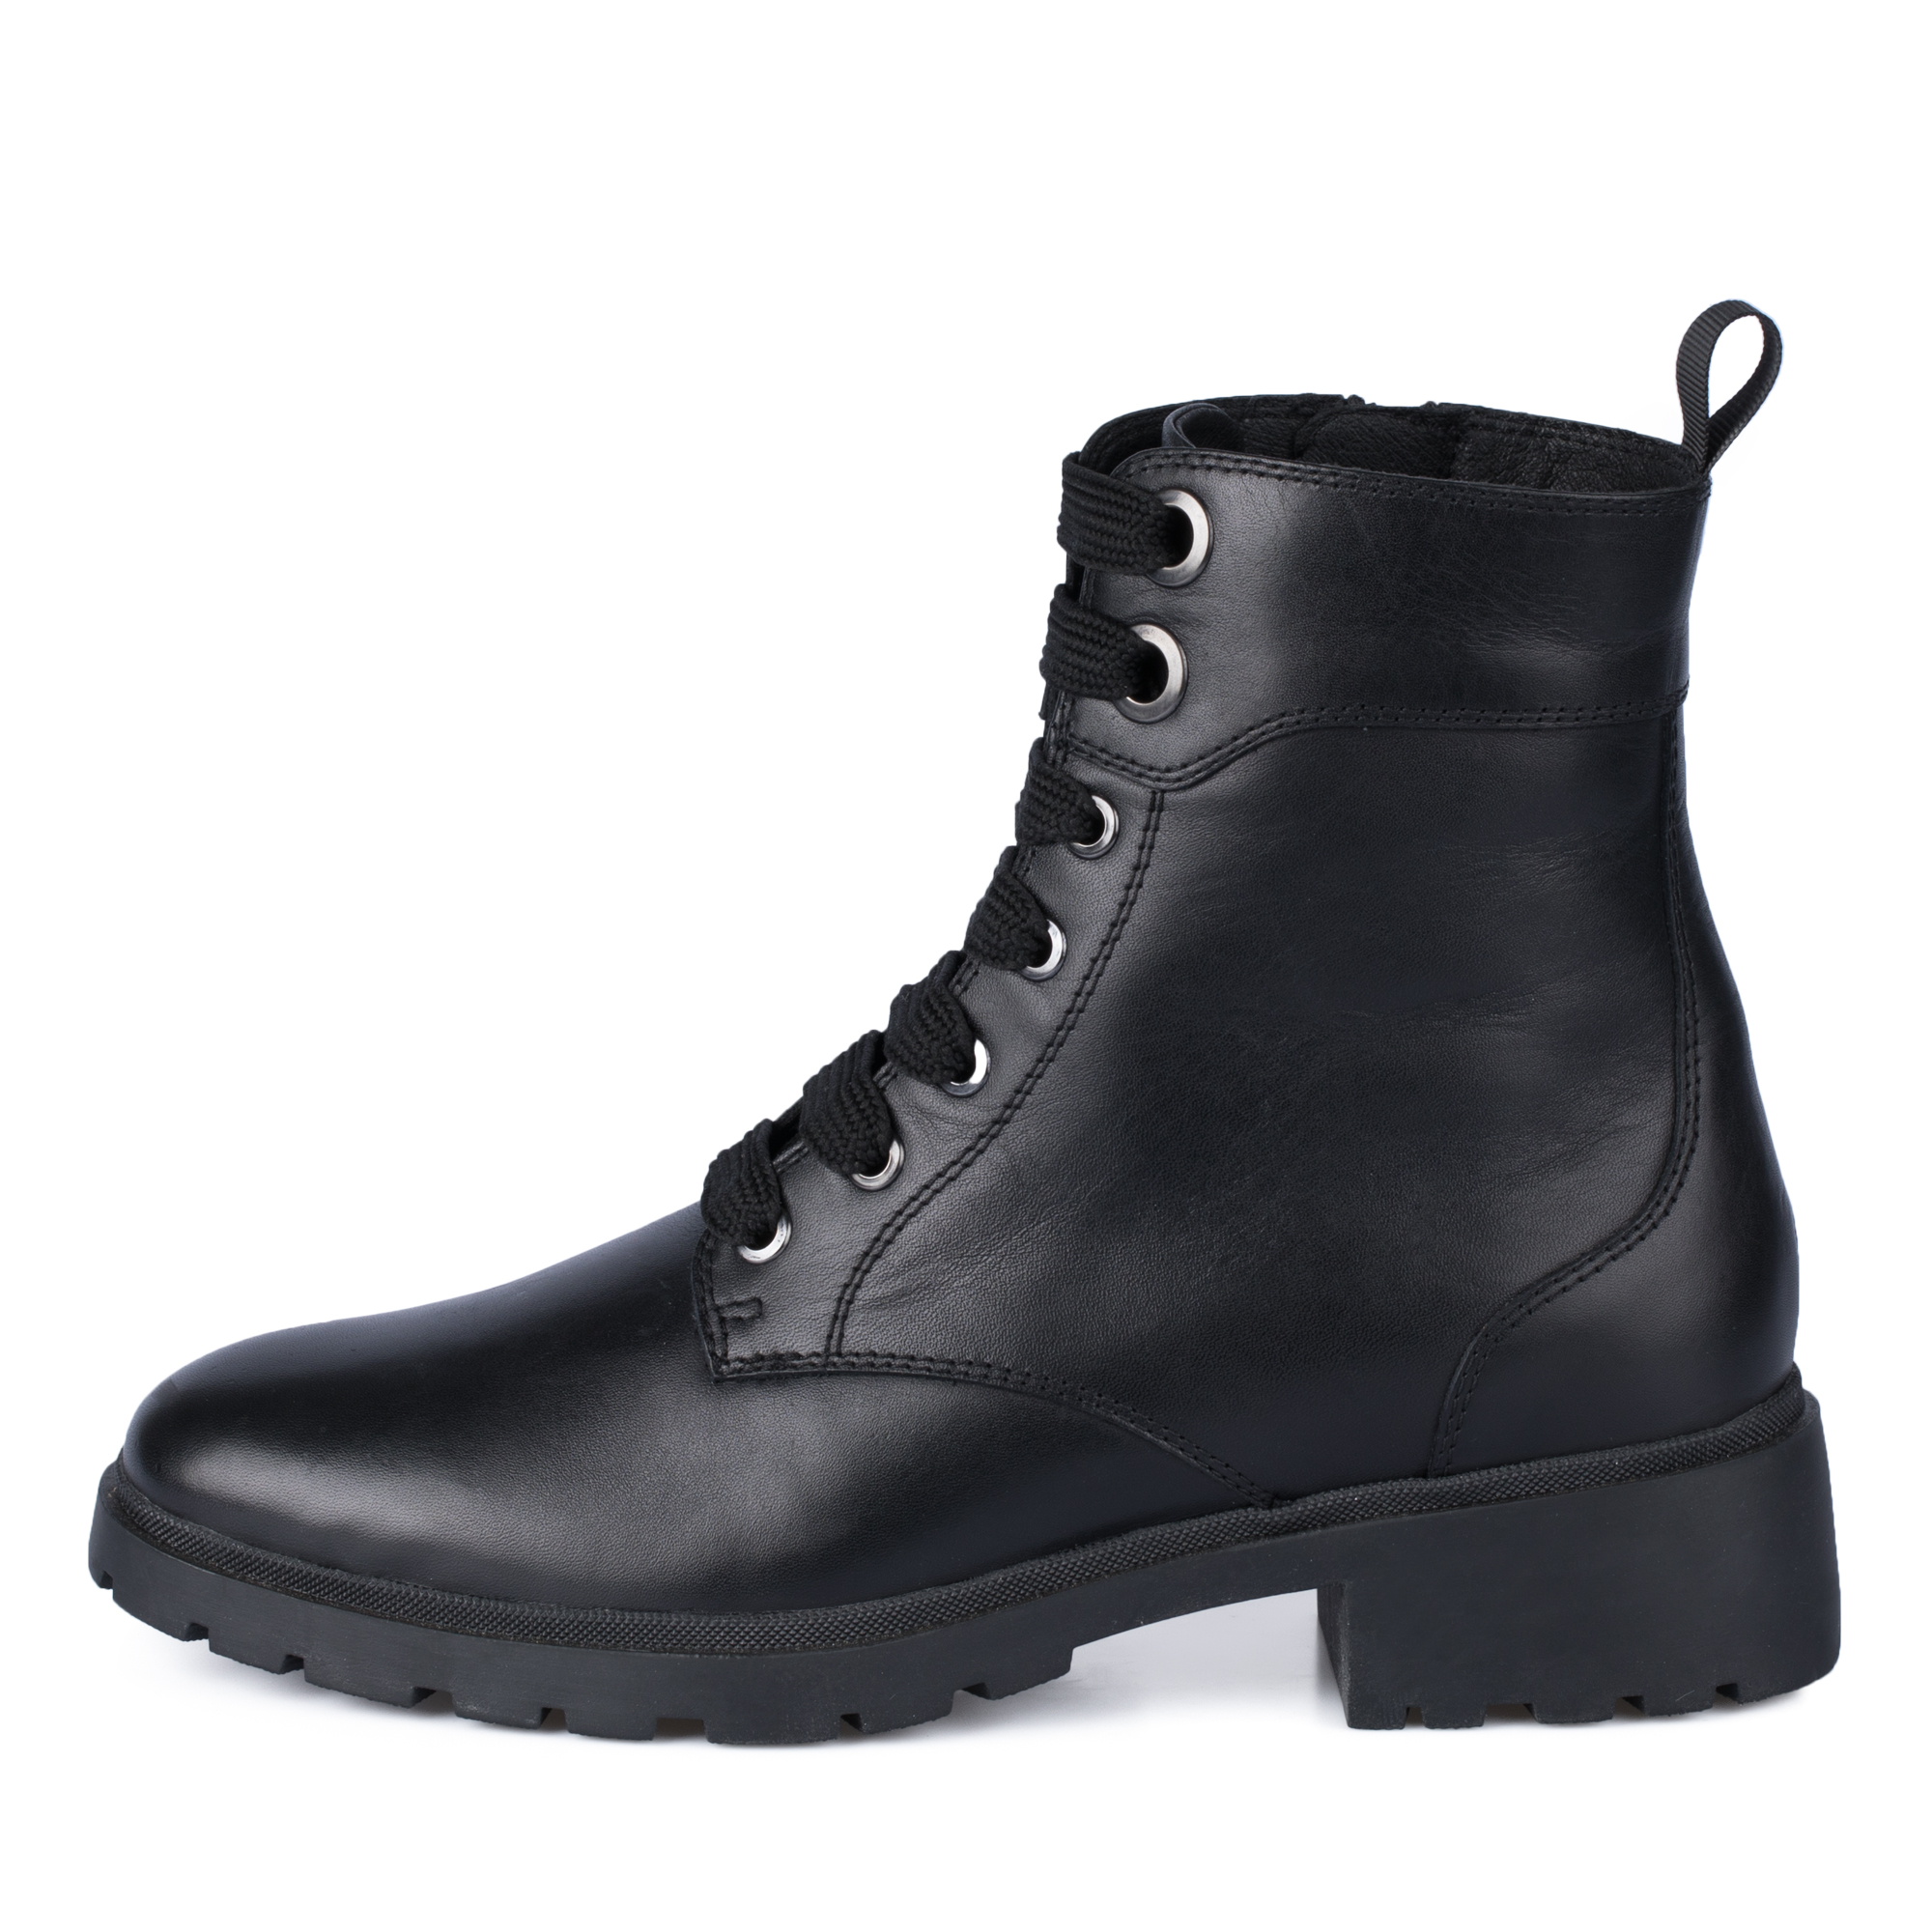 Ботинки Thomas Munz 569-193A-2102, цвет черный, размер 39 - фото 1